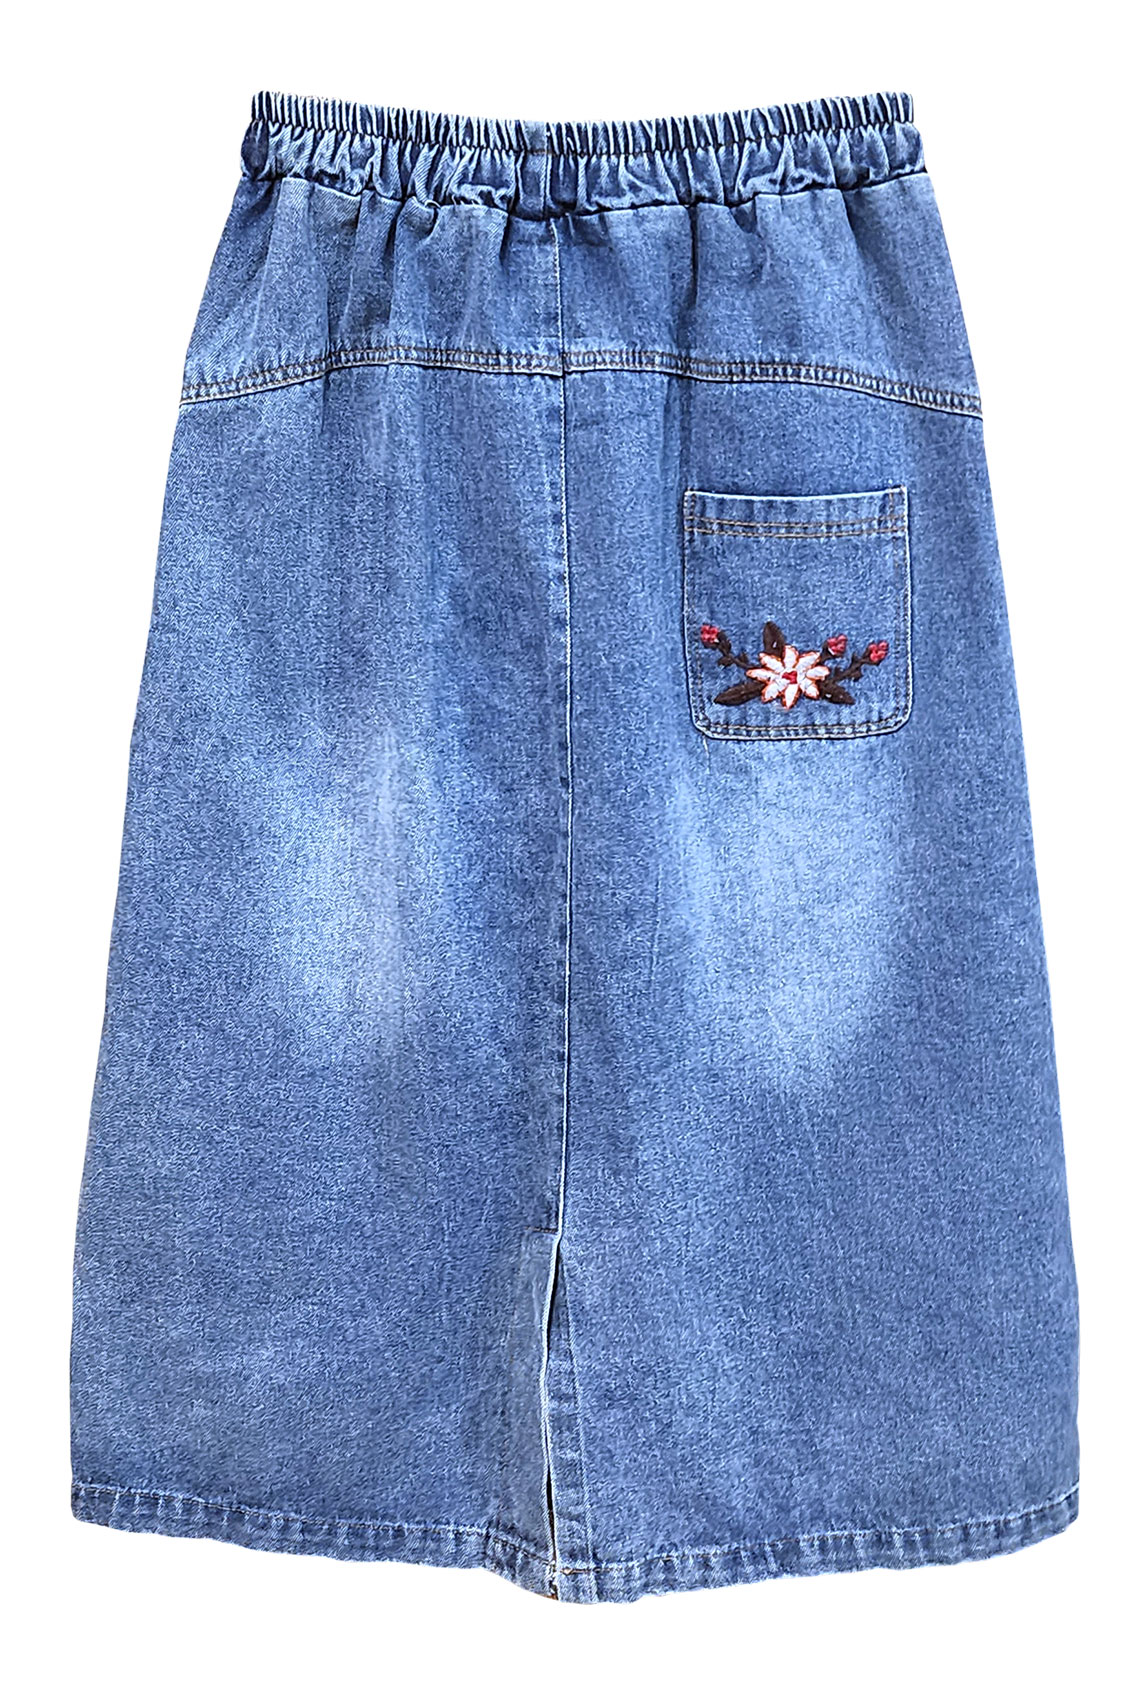 джинсовая юбка с вышивкой